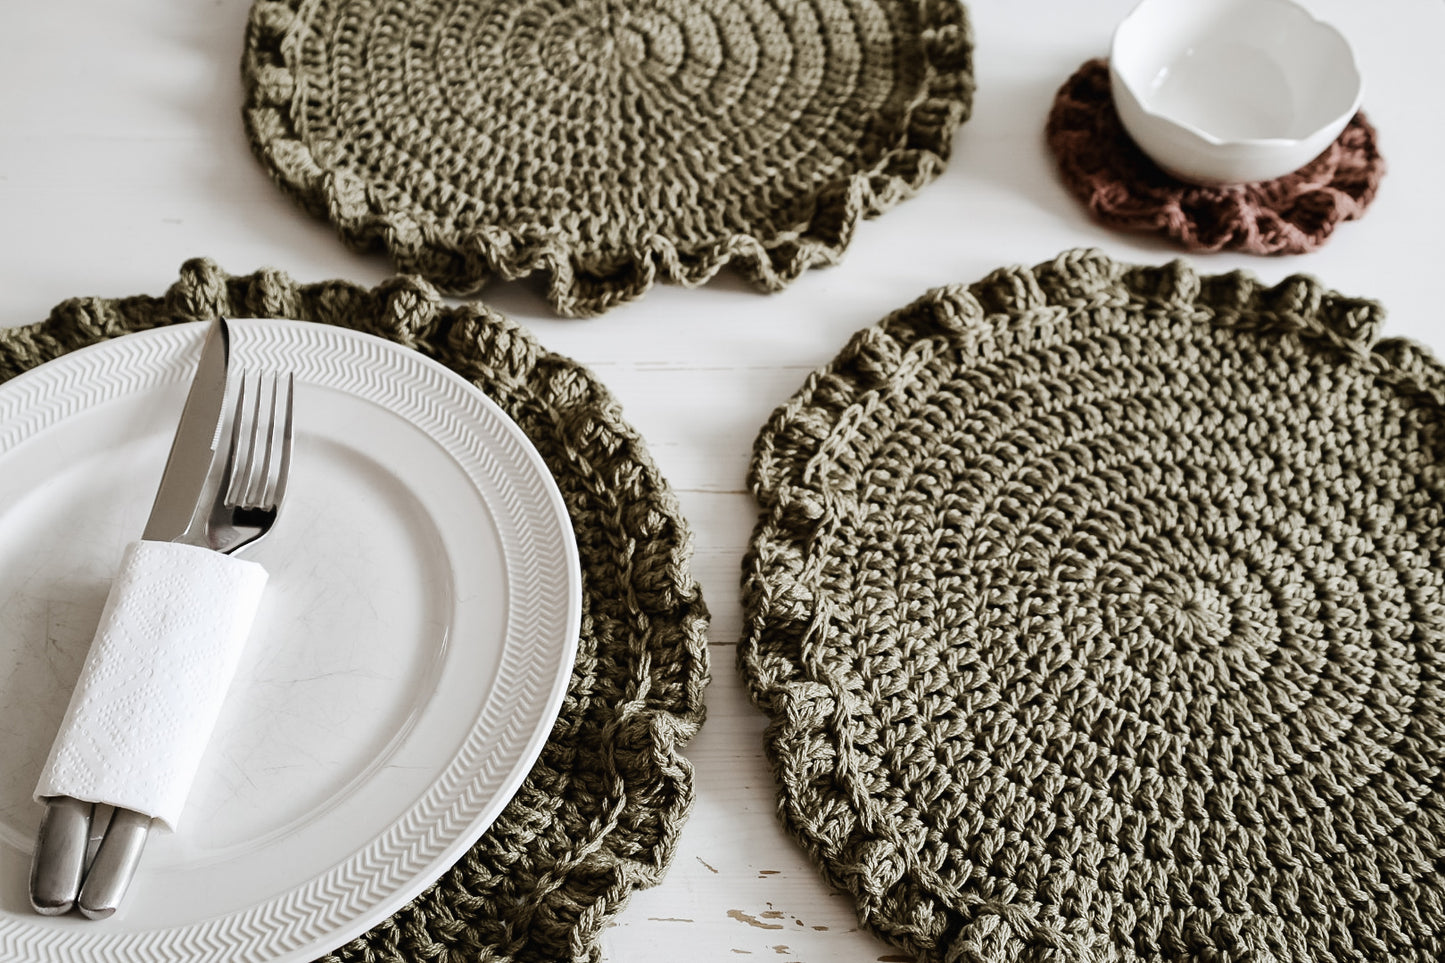 Ruffle Placemats & Coasters – Crochet Pattern